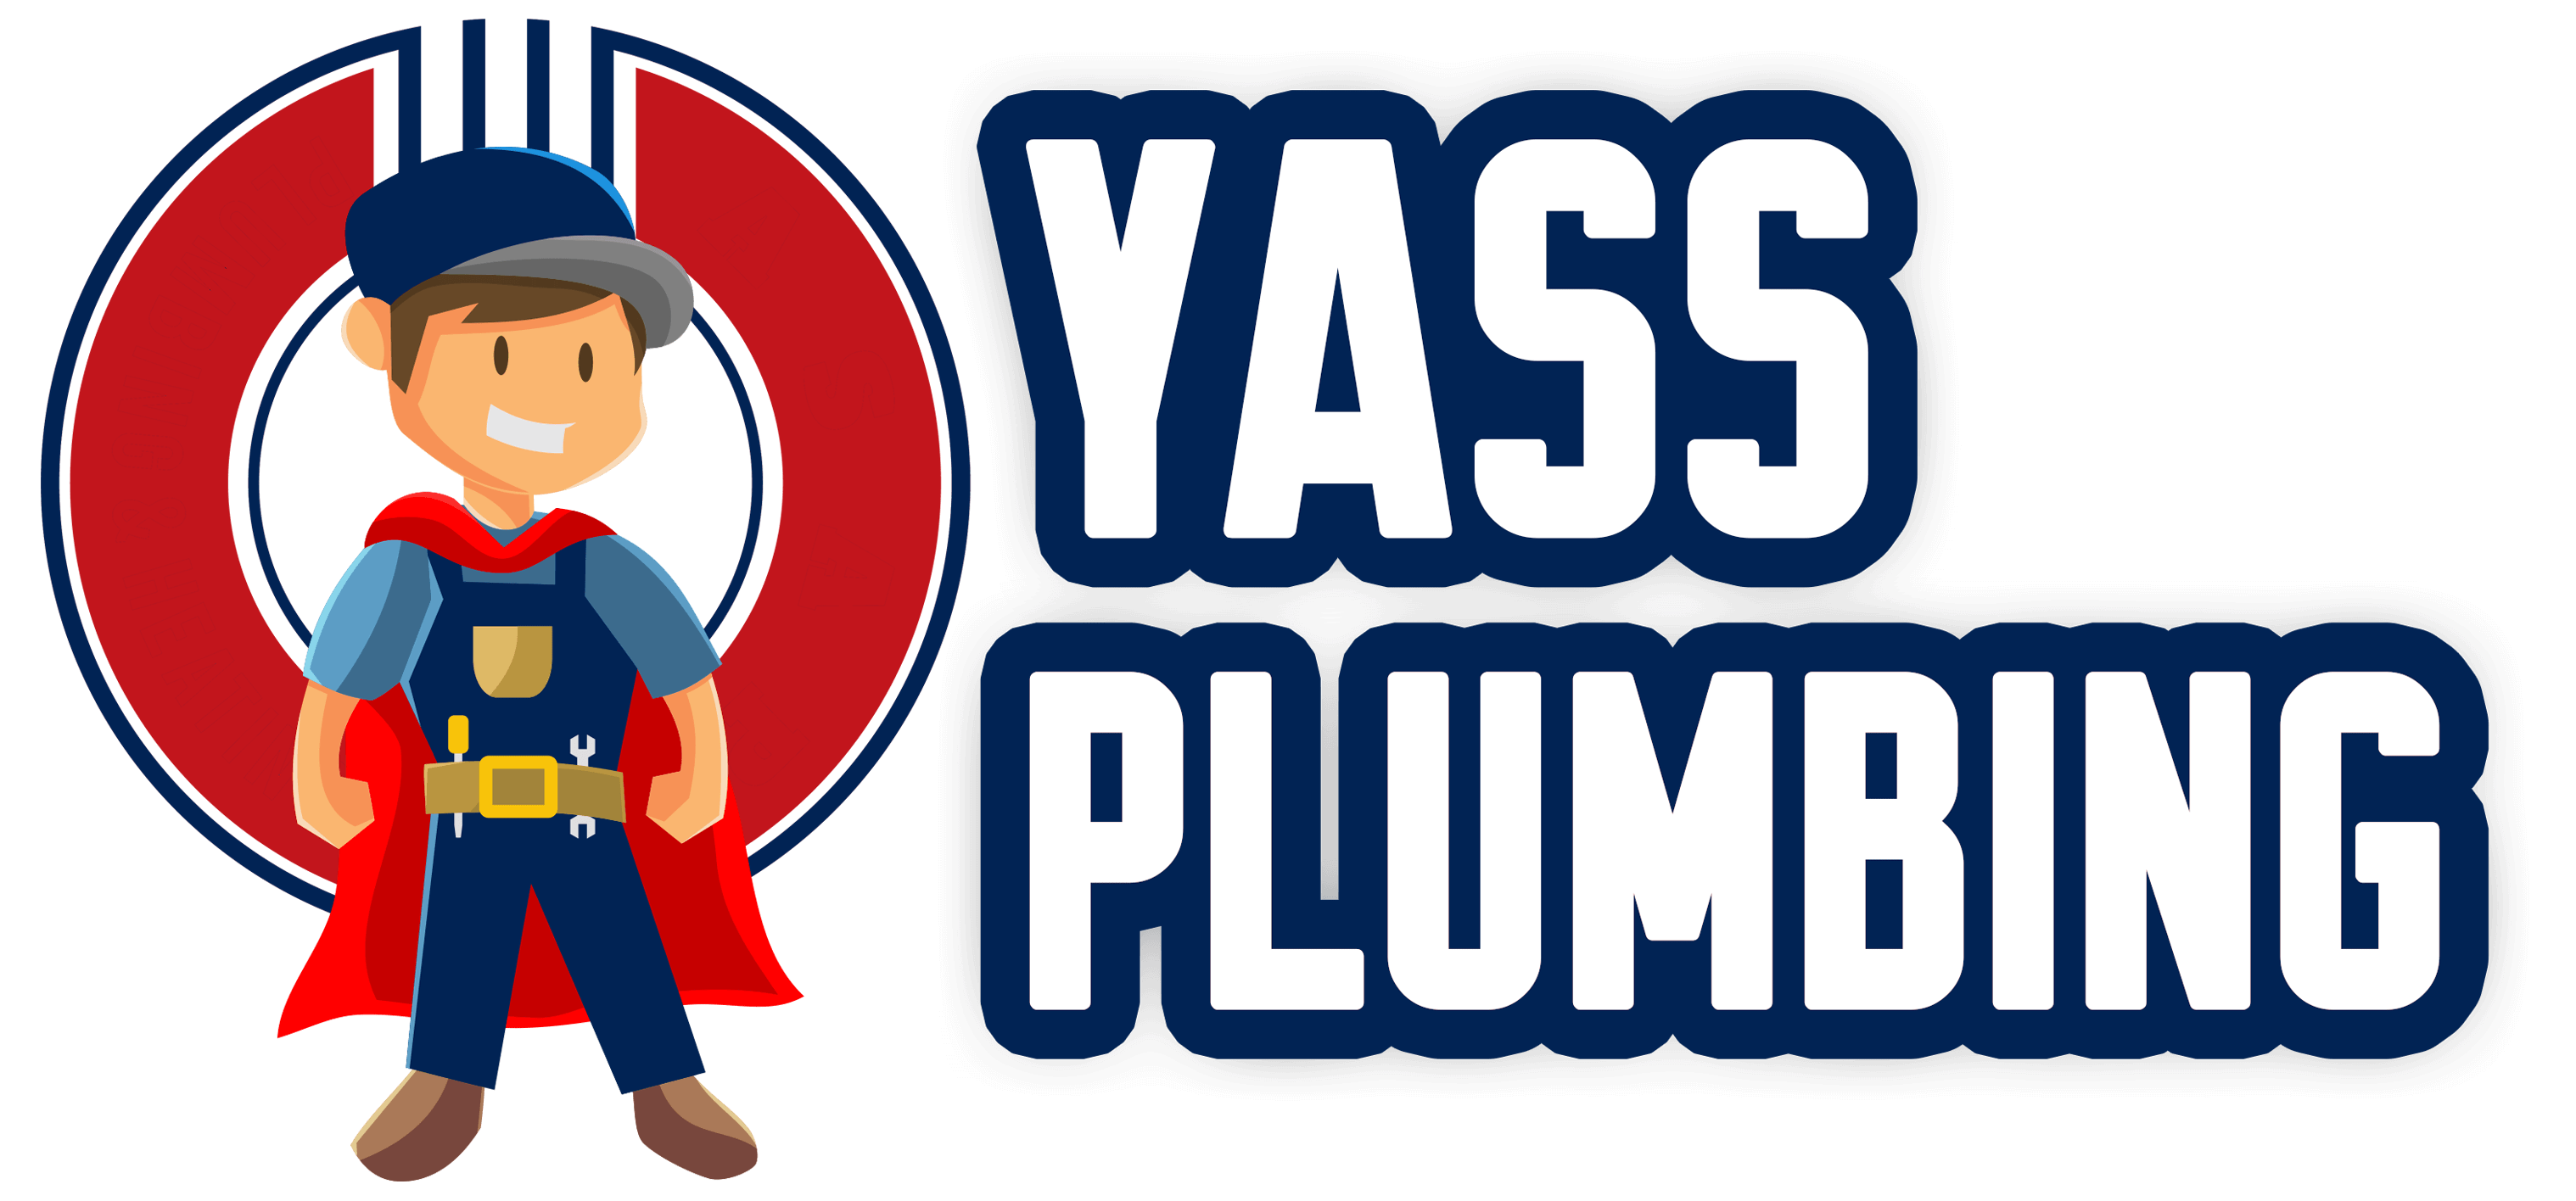 Yass-plumbing